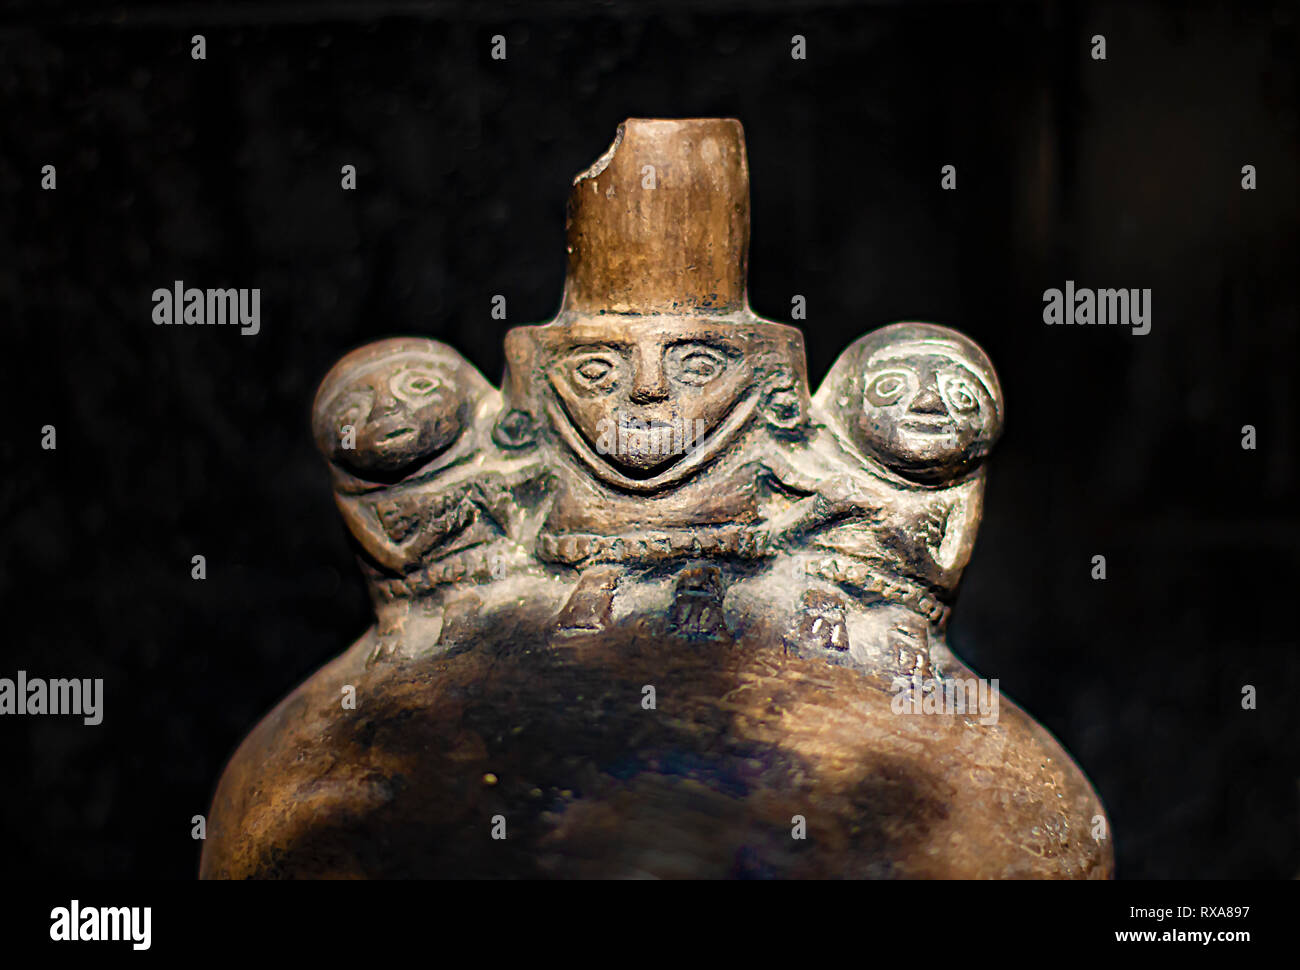 Trois visages de la céramique Pré-colombienne appelé 'Huacos' de Chancay, une culture péruvienne. Collection privée de la poterie inca. Banque D'Images